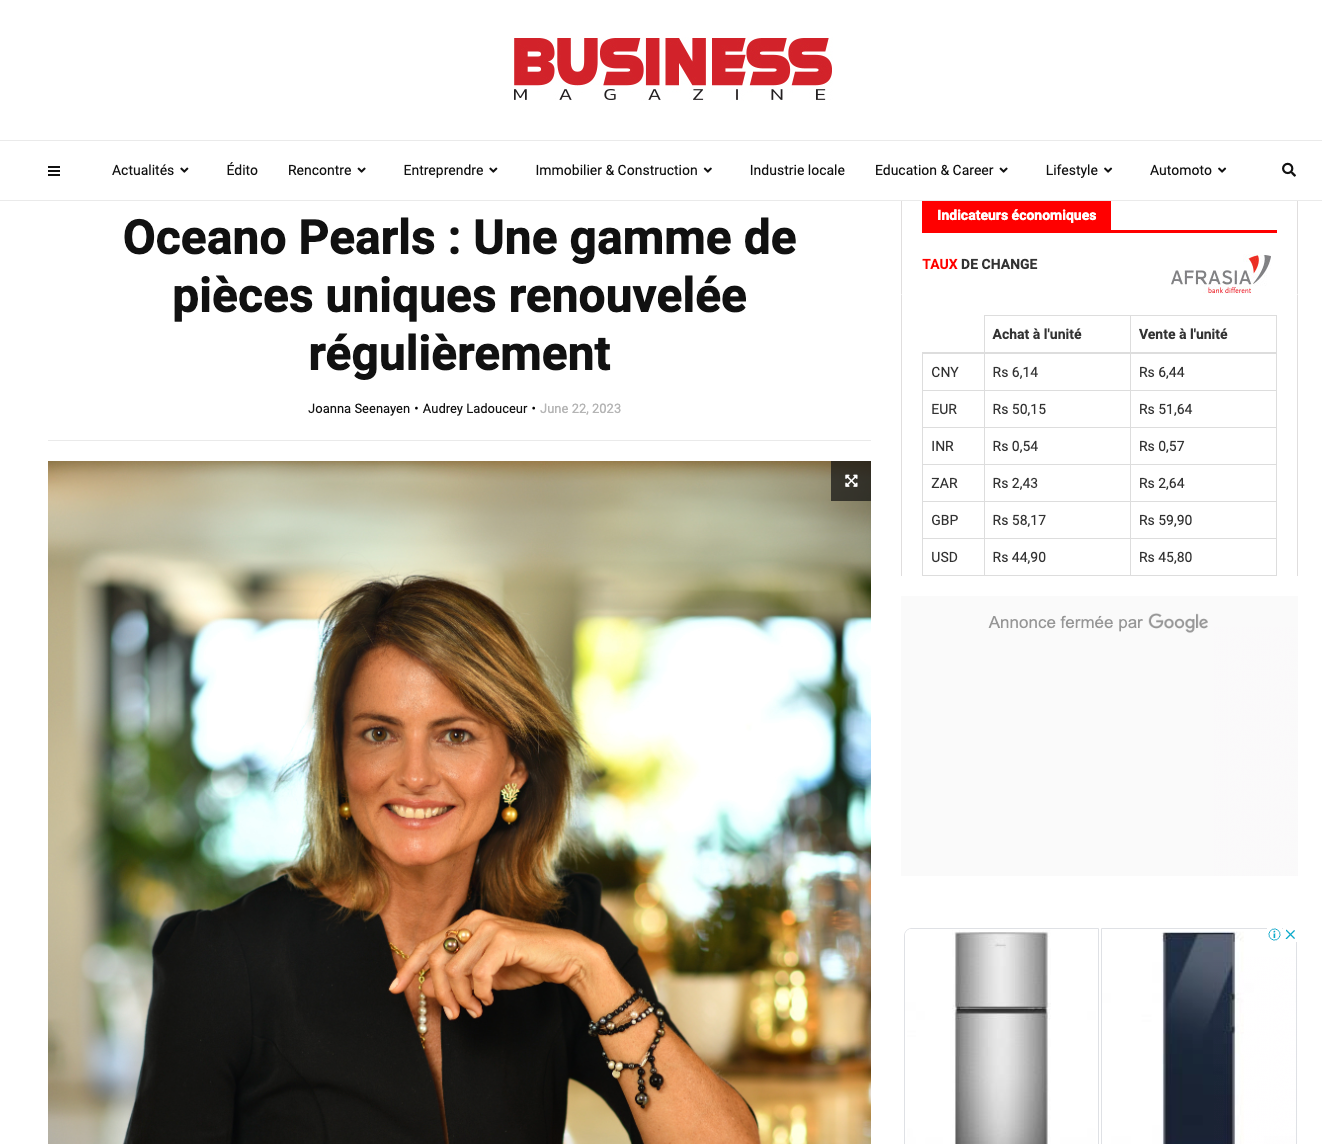 Business Magazine - Oceano Pearls : Une gamme de pièces uniques renouvelée régulièrement - Oceano Pearls